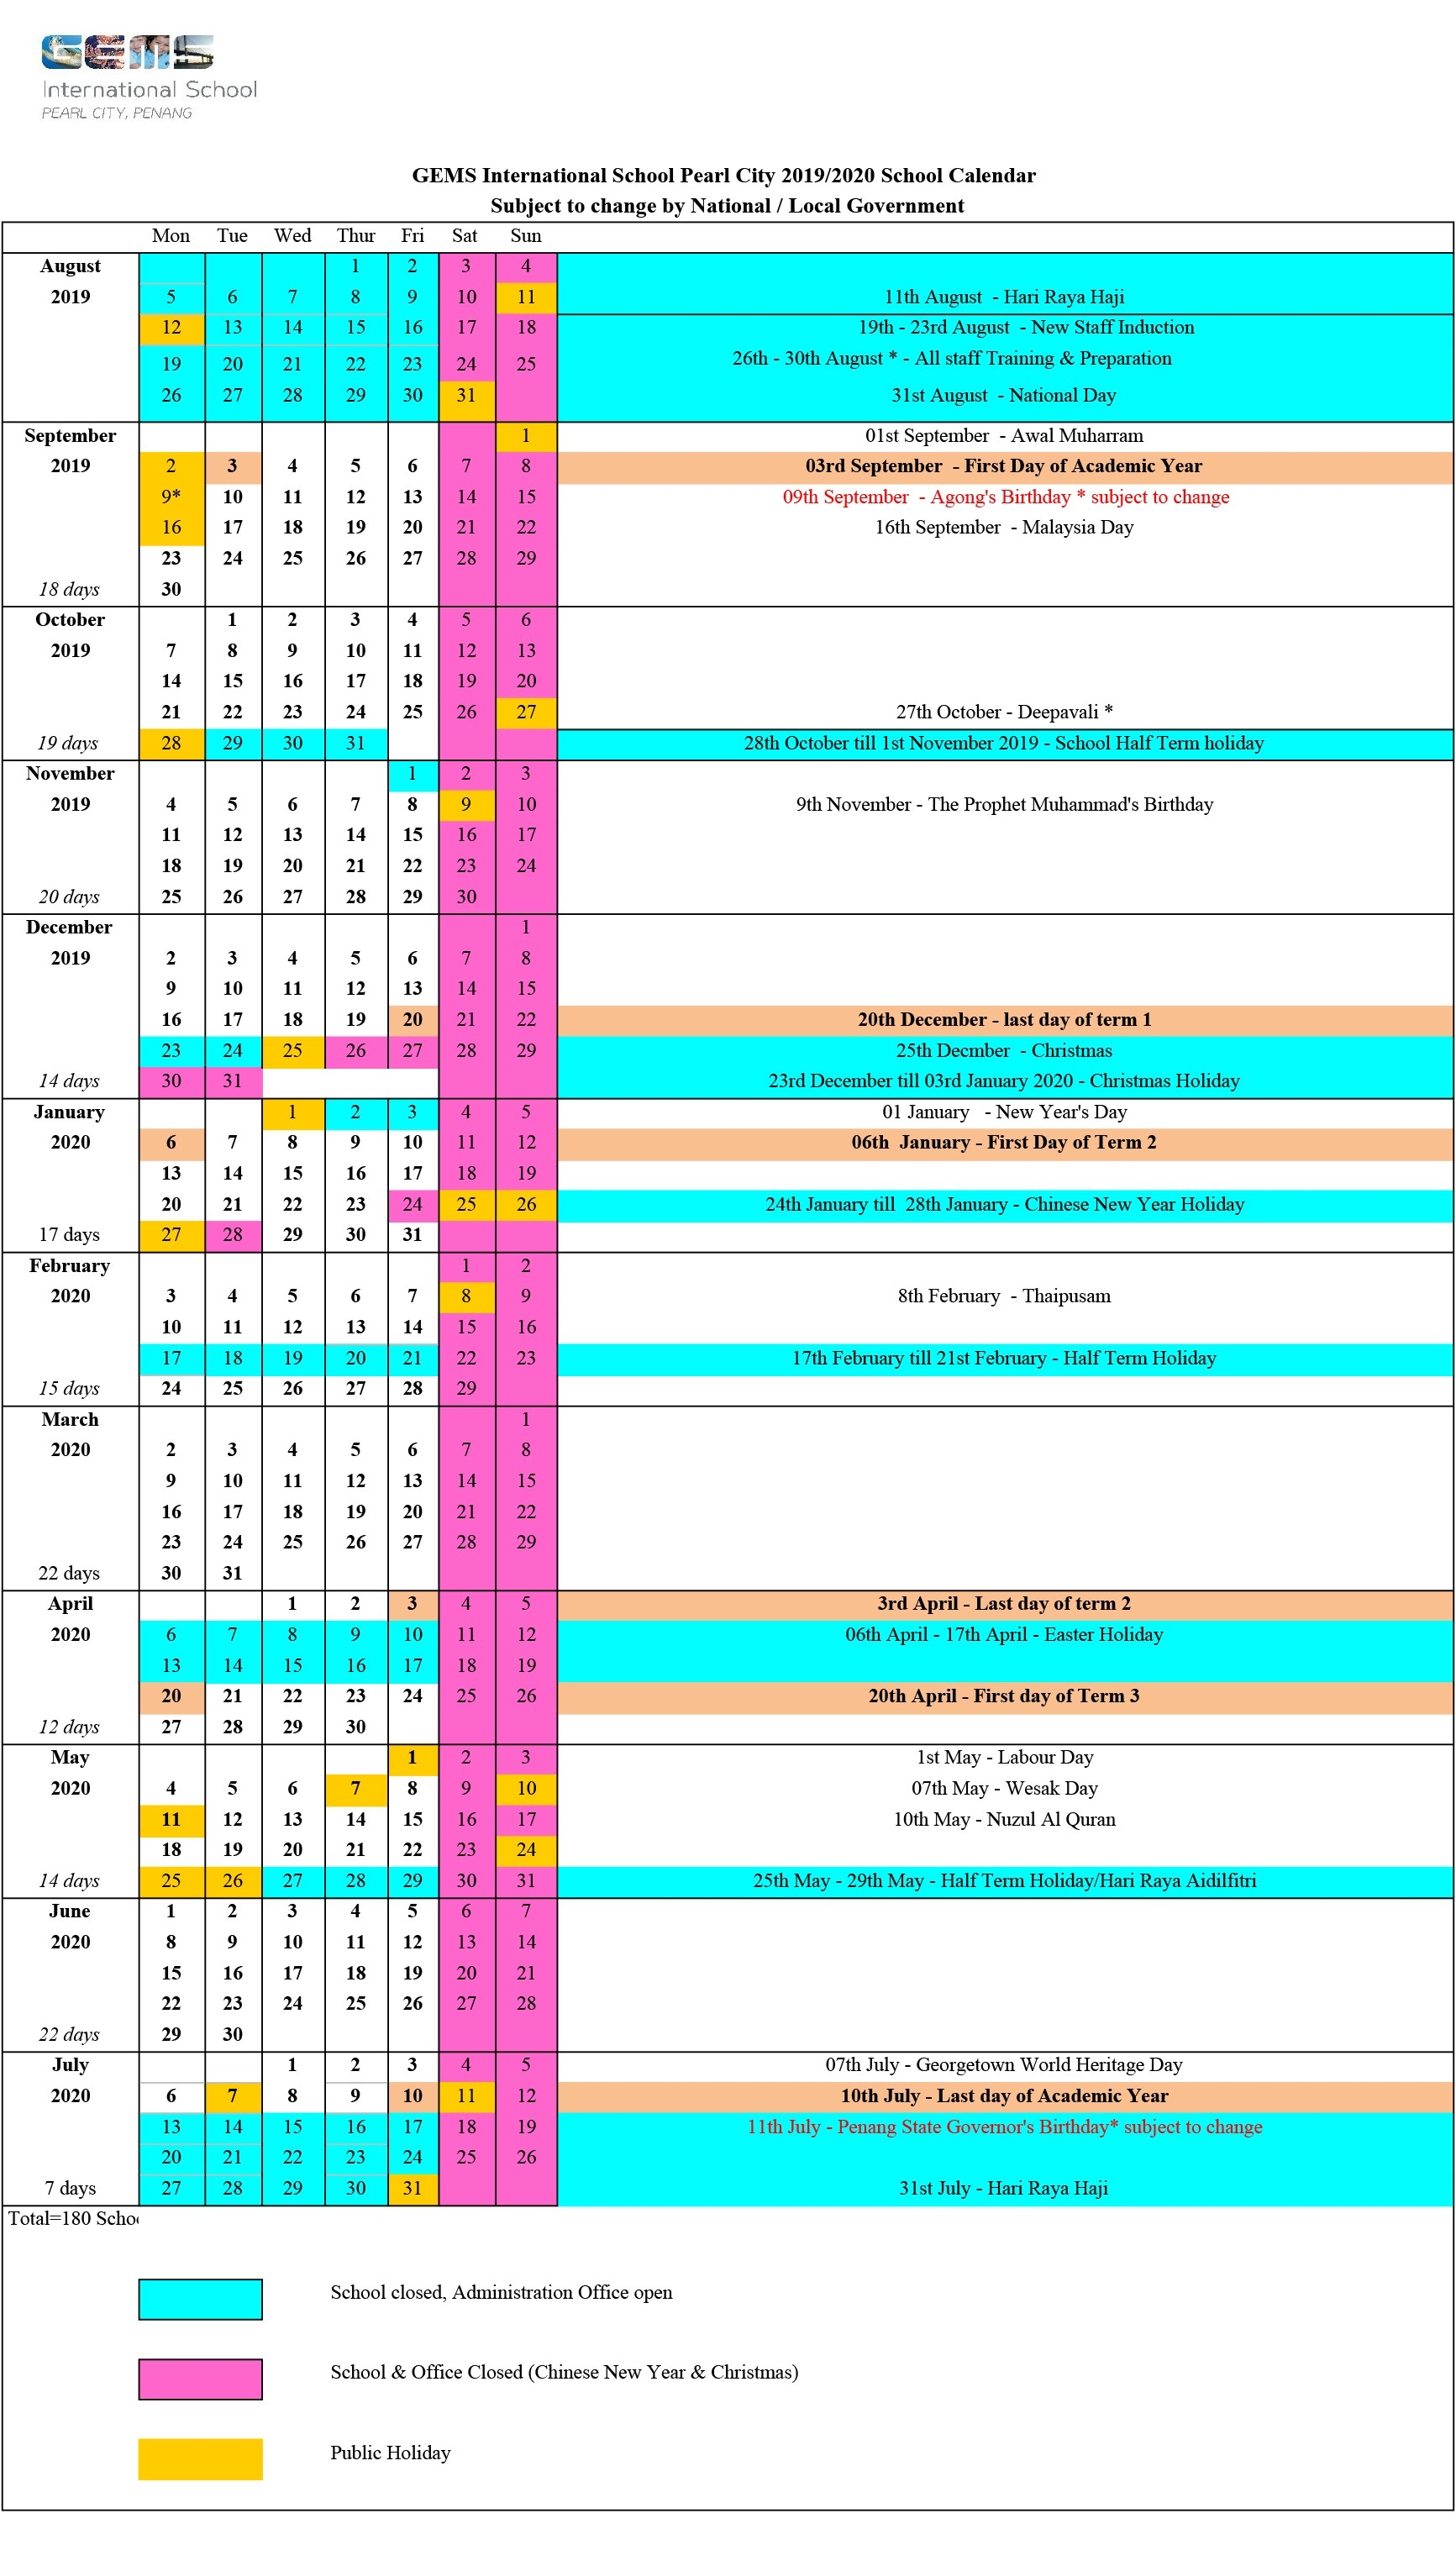 2019/2020 School Calendar - Gems International School-2020 Calendar With Holidays Malaysia